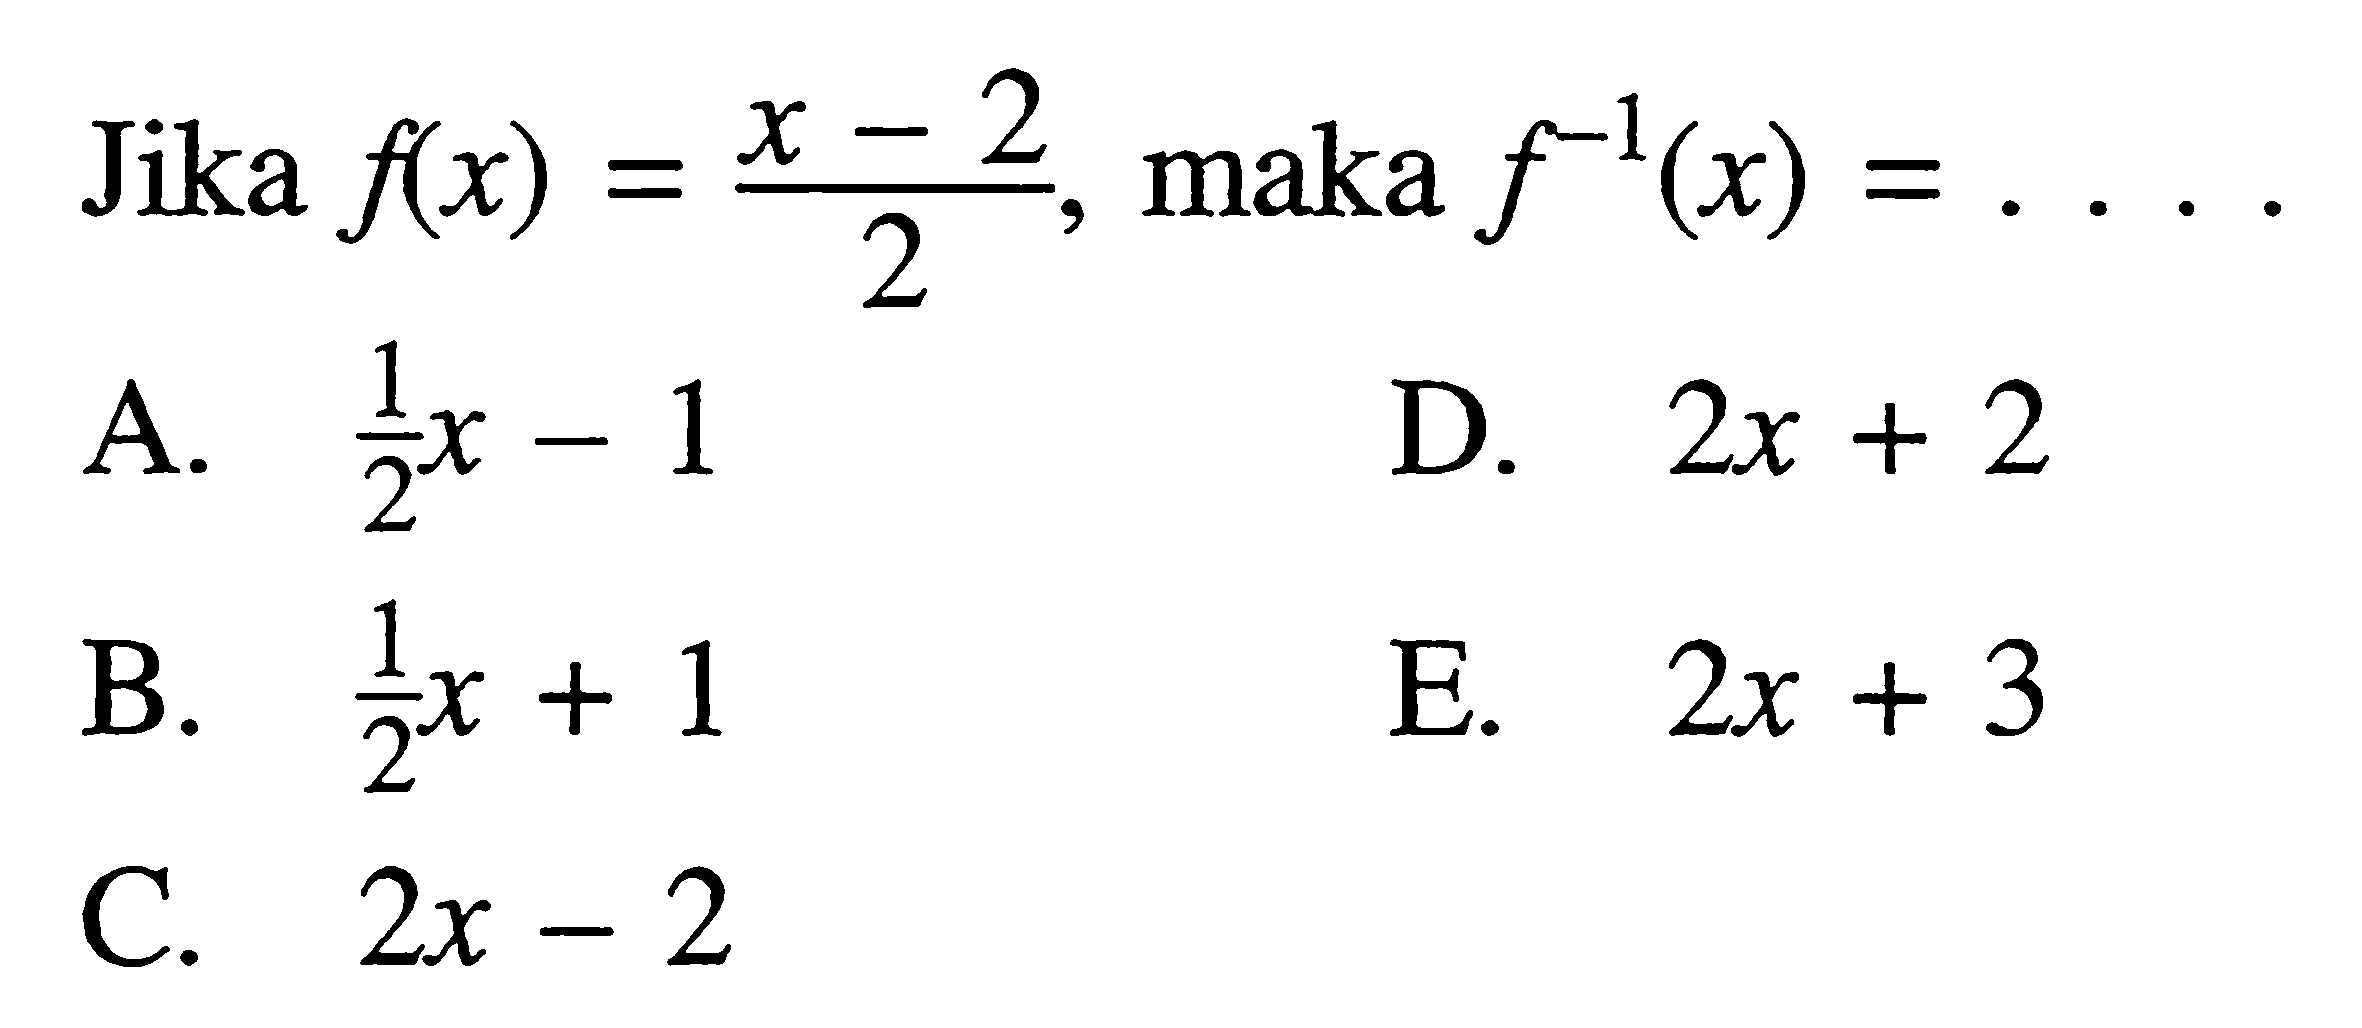 Jika f(x)=(x-2)/2, maka f^(-1) (x) = ...